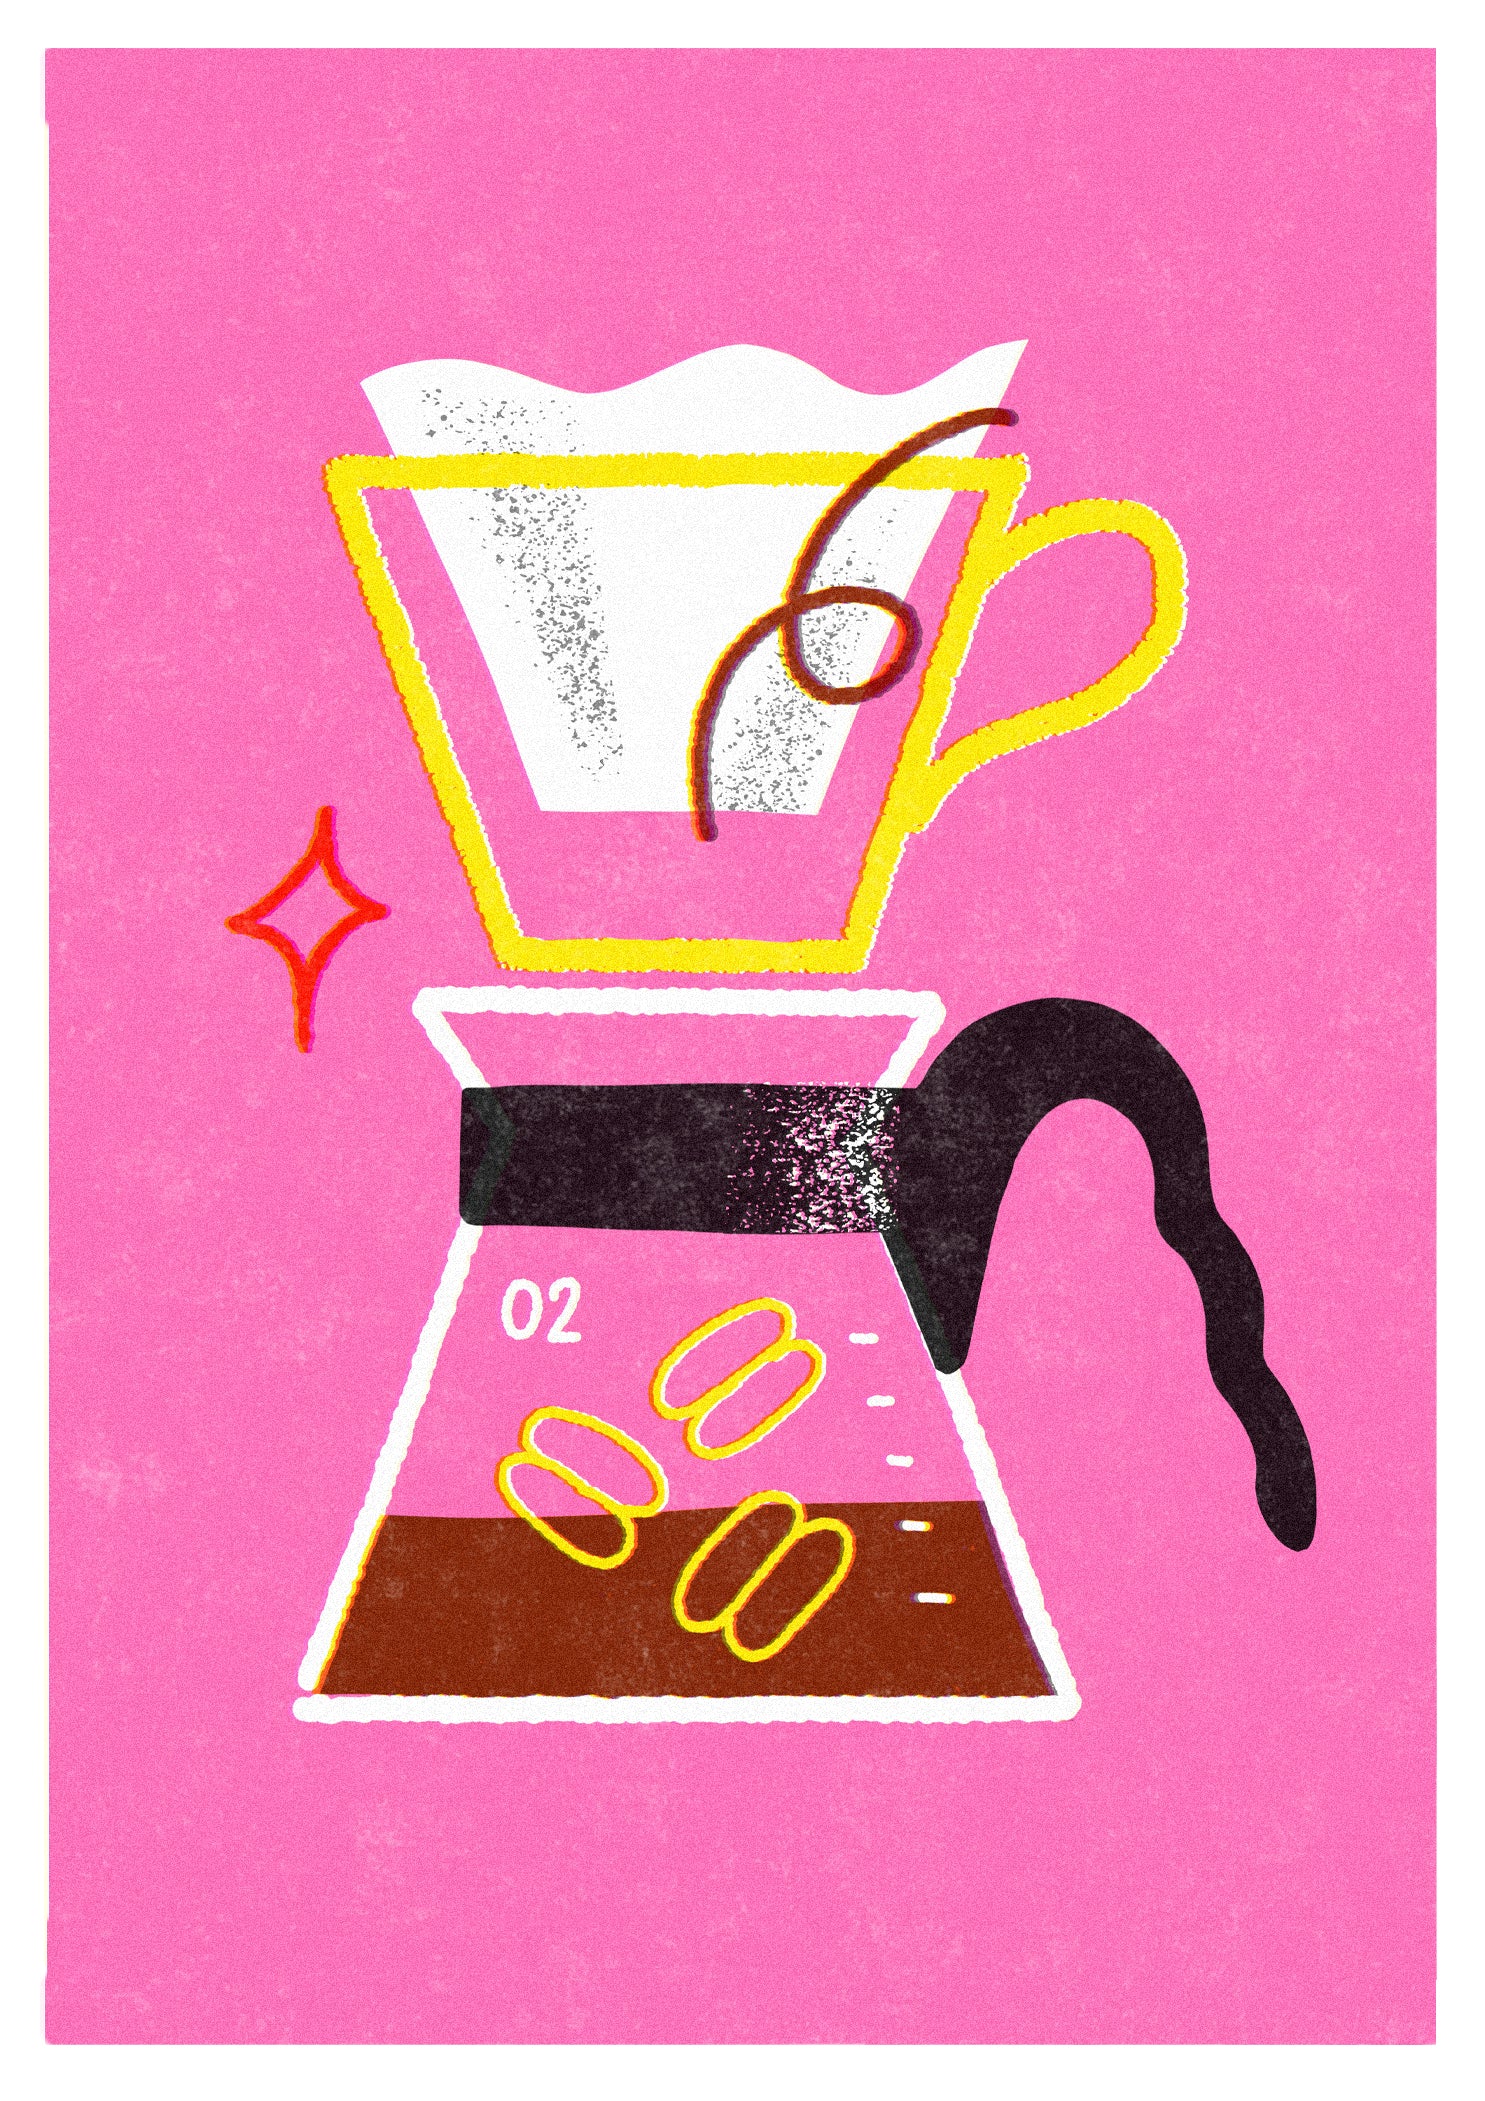 Hario Coffee Maker - Sara Marcos